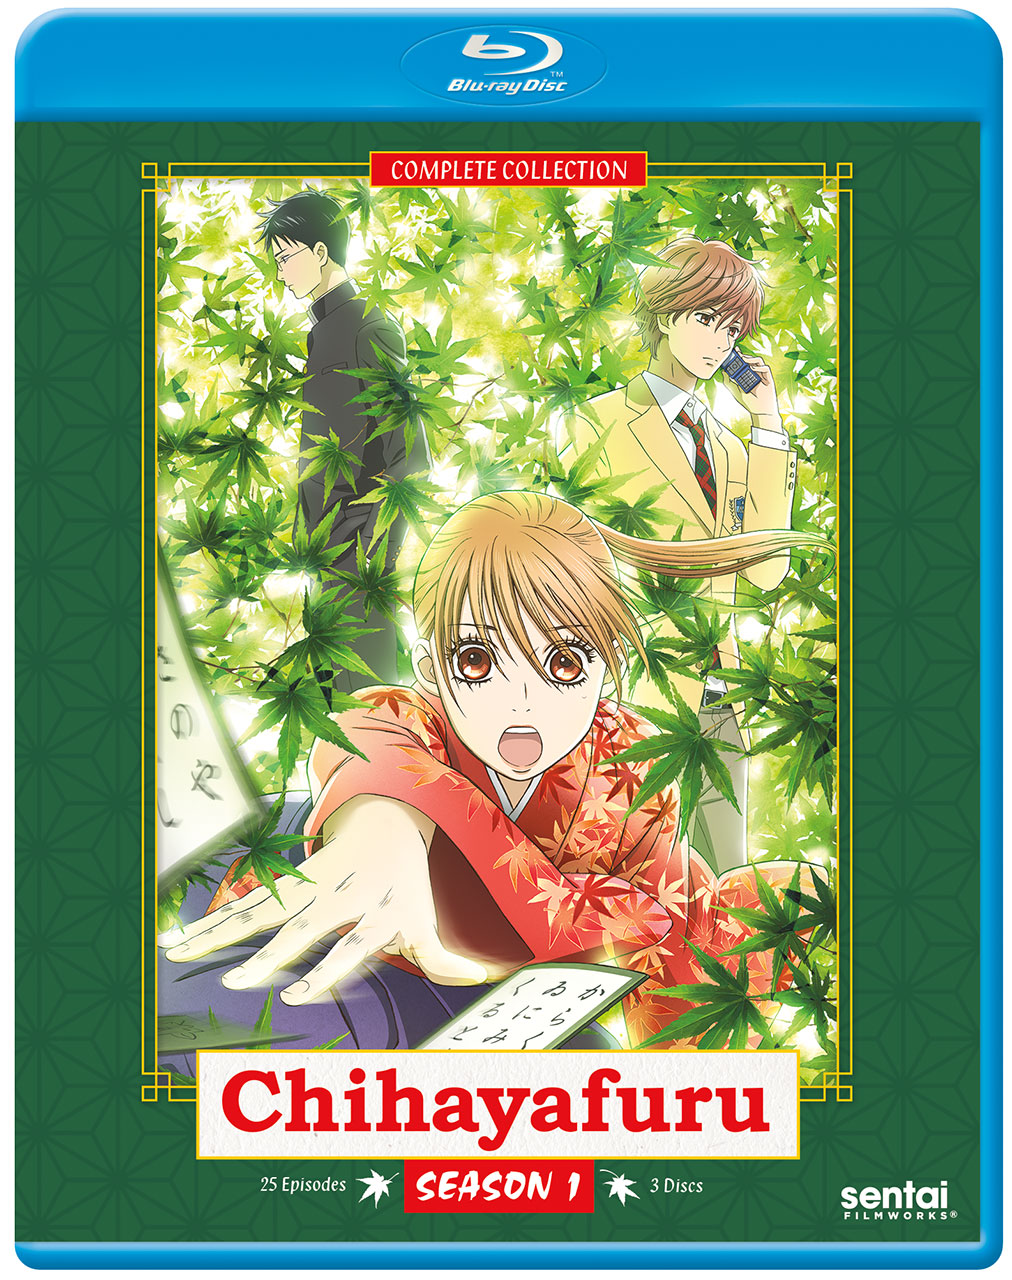 Episode One-Derland: Chihayafuru